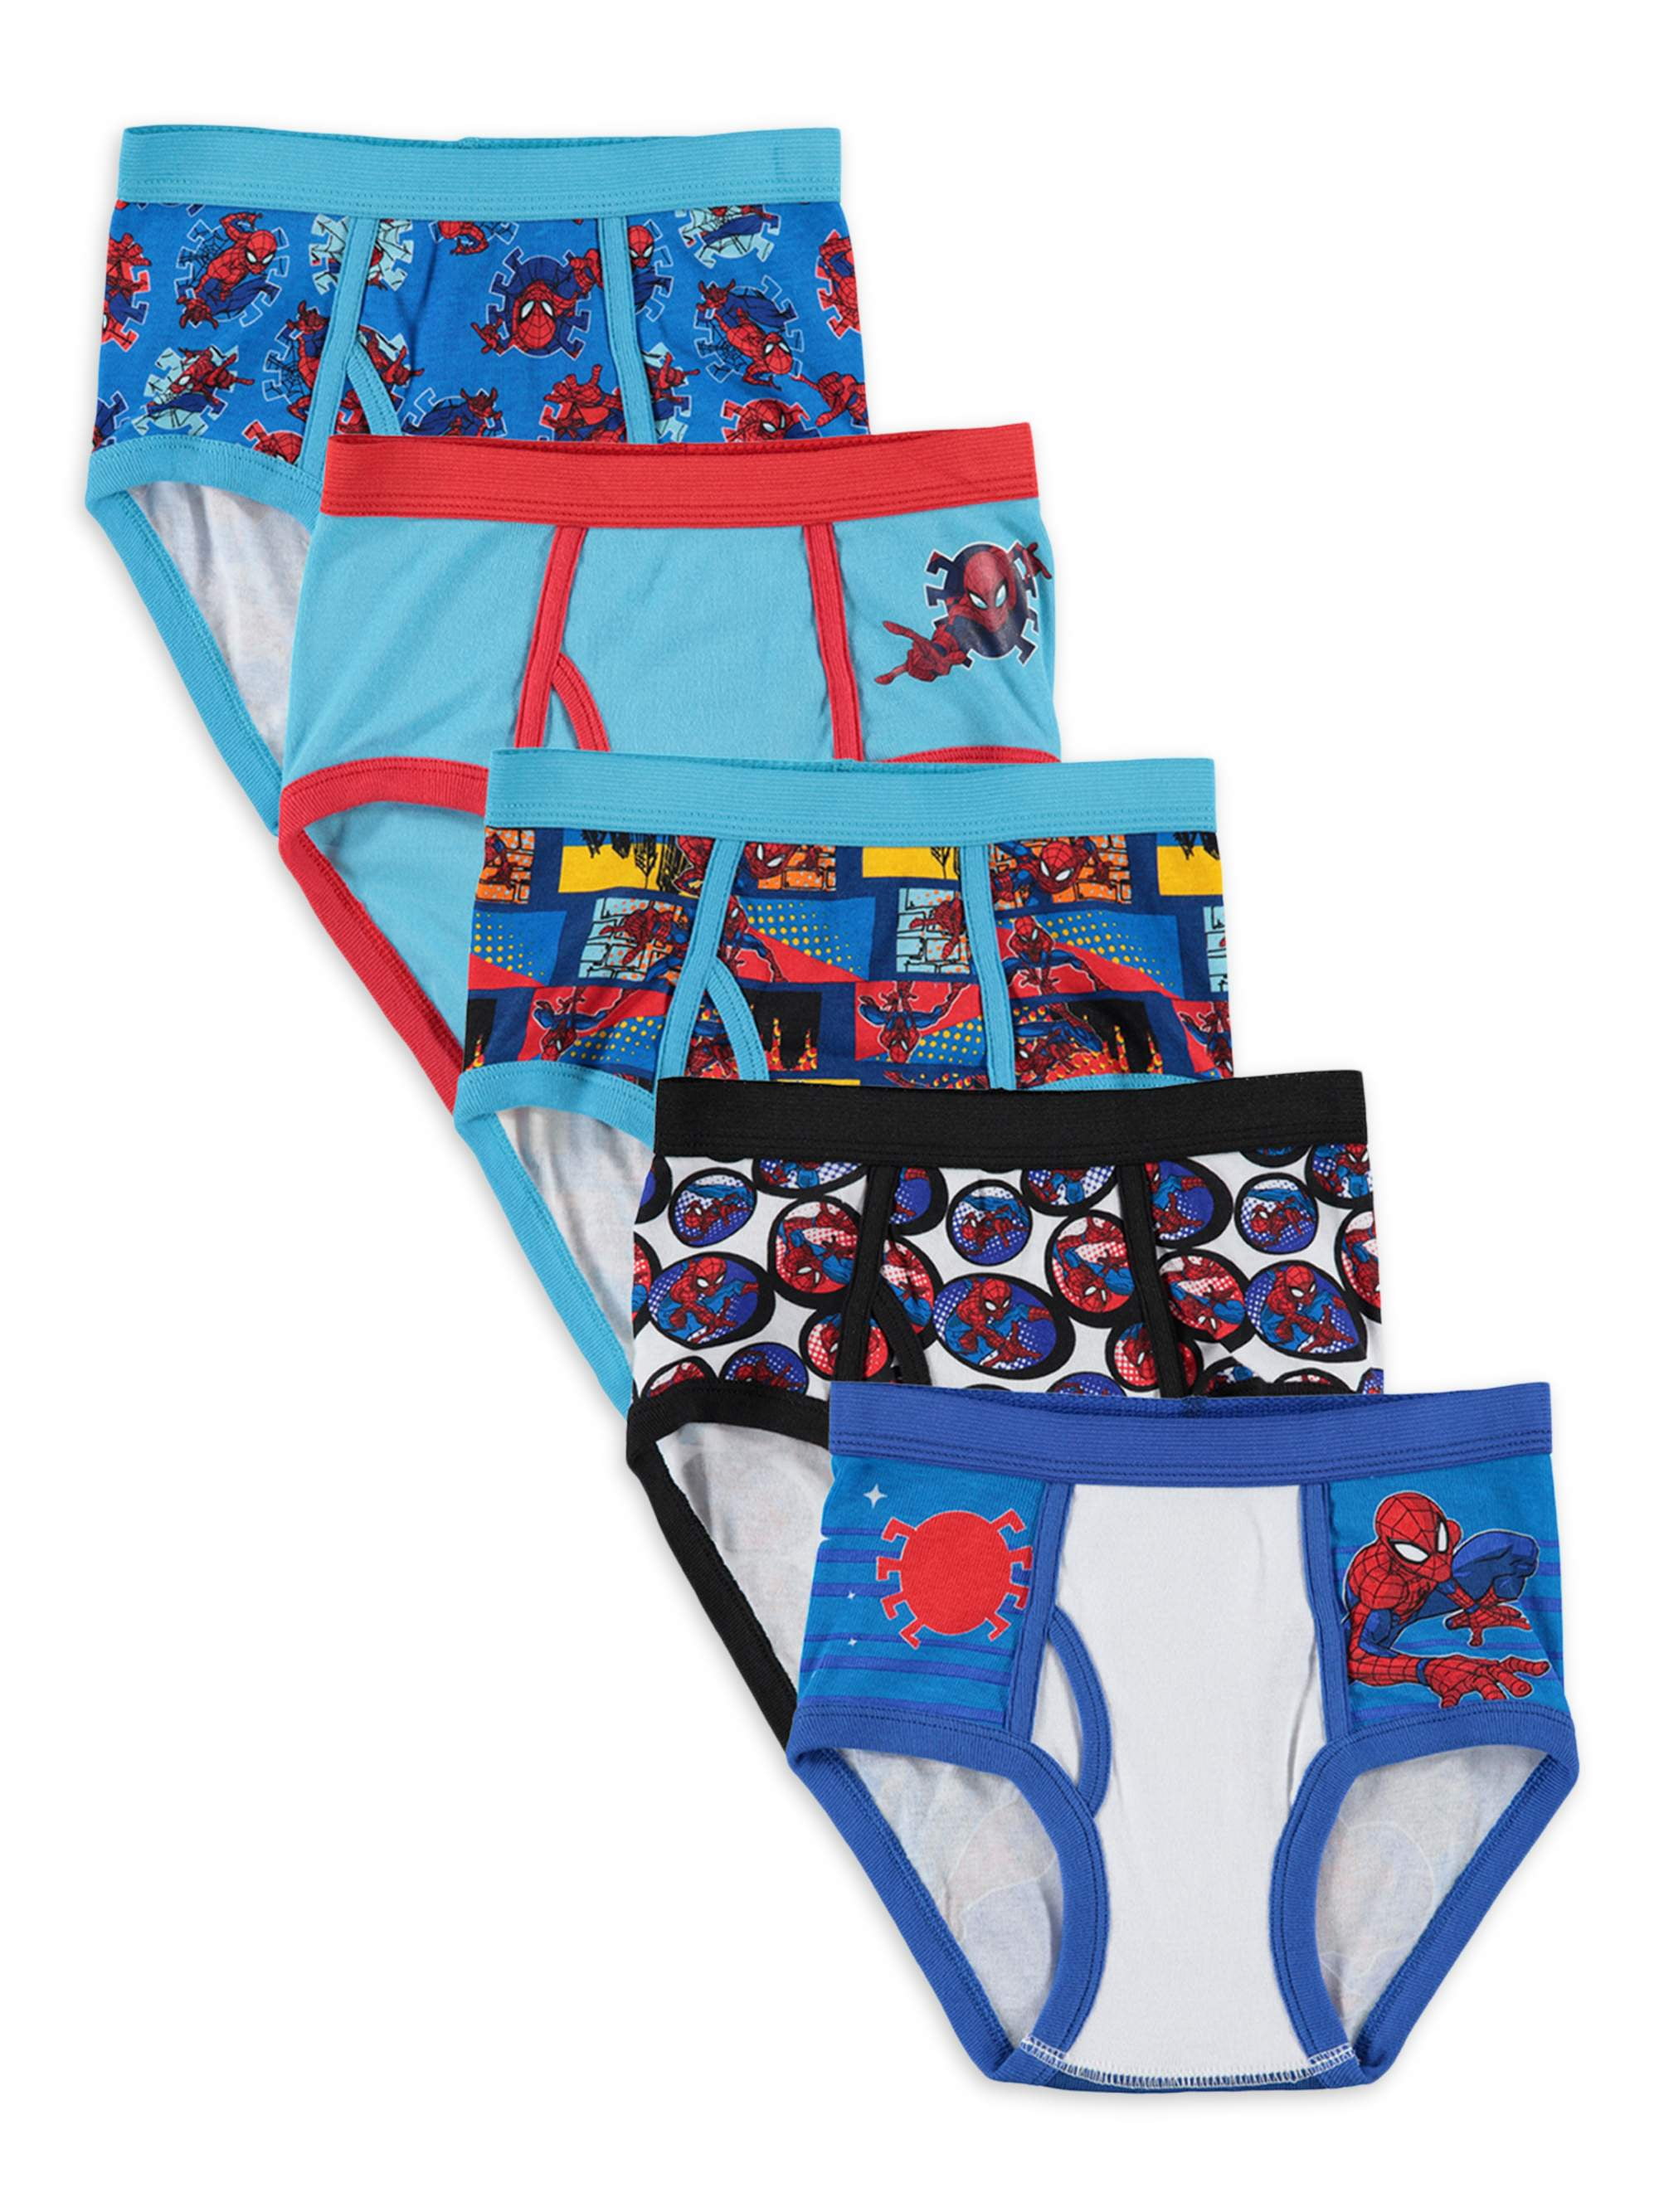 Marvel Boys Spider-Man Briefs, 5-Pack, Sizes 4-8